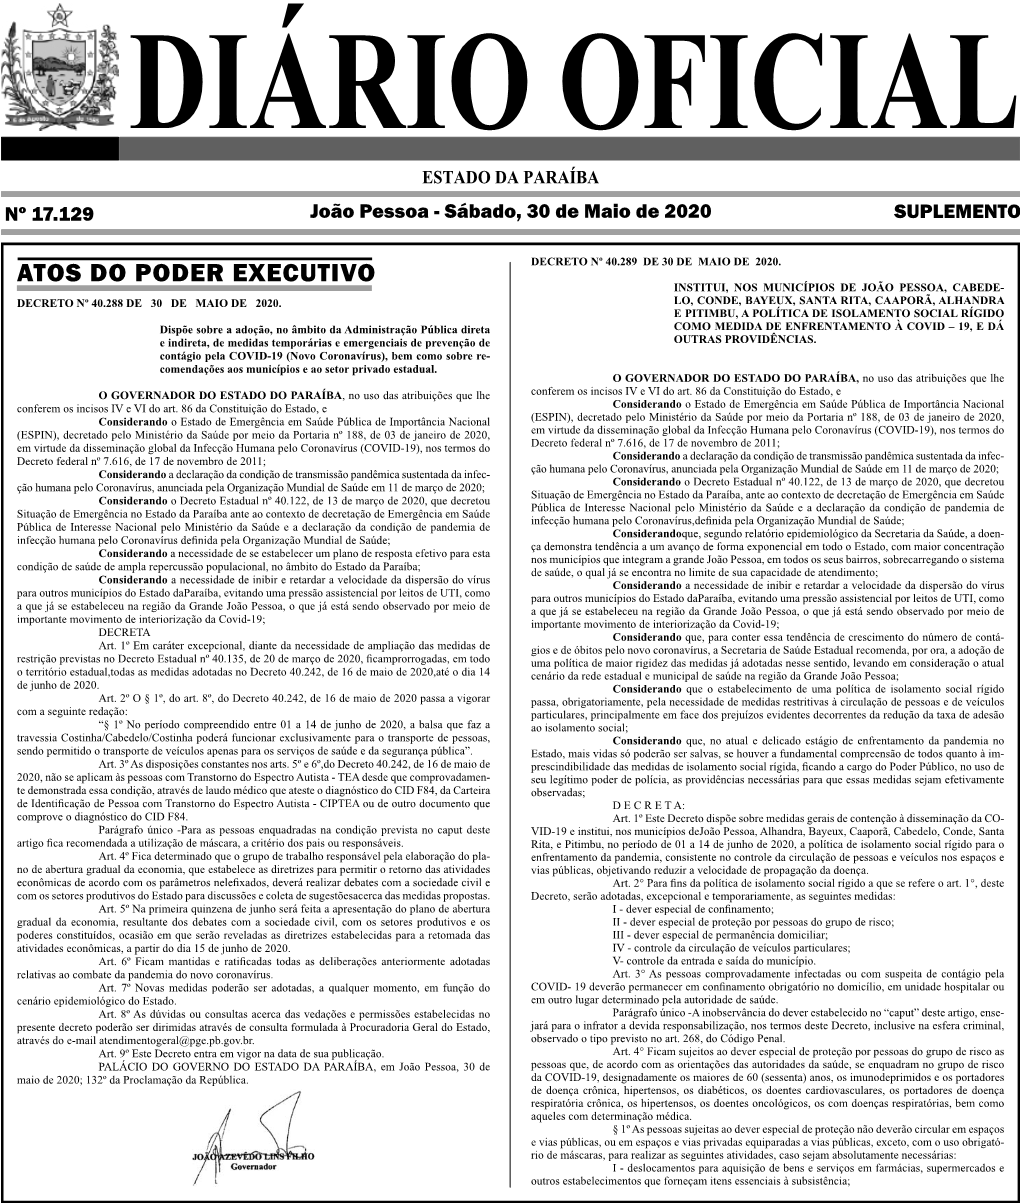 Diario Oficial 30-05-2020 SUPLEMENTO.Indd